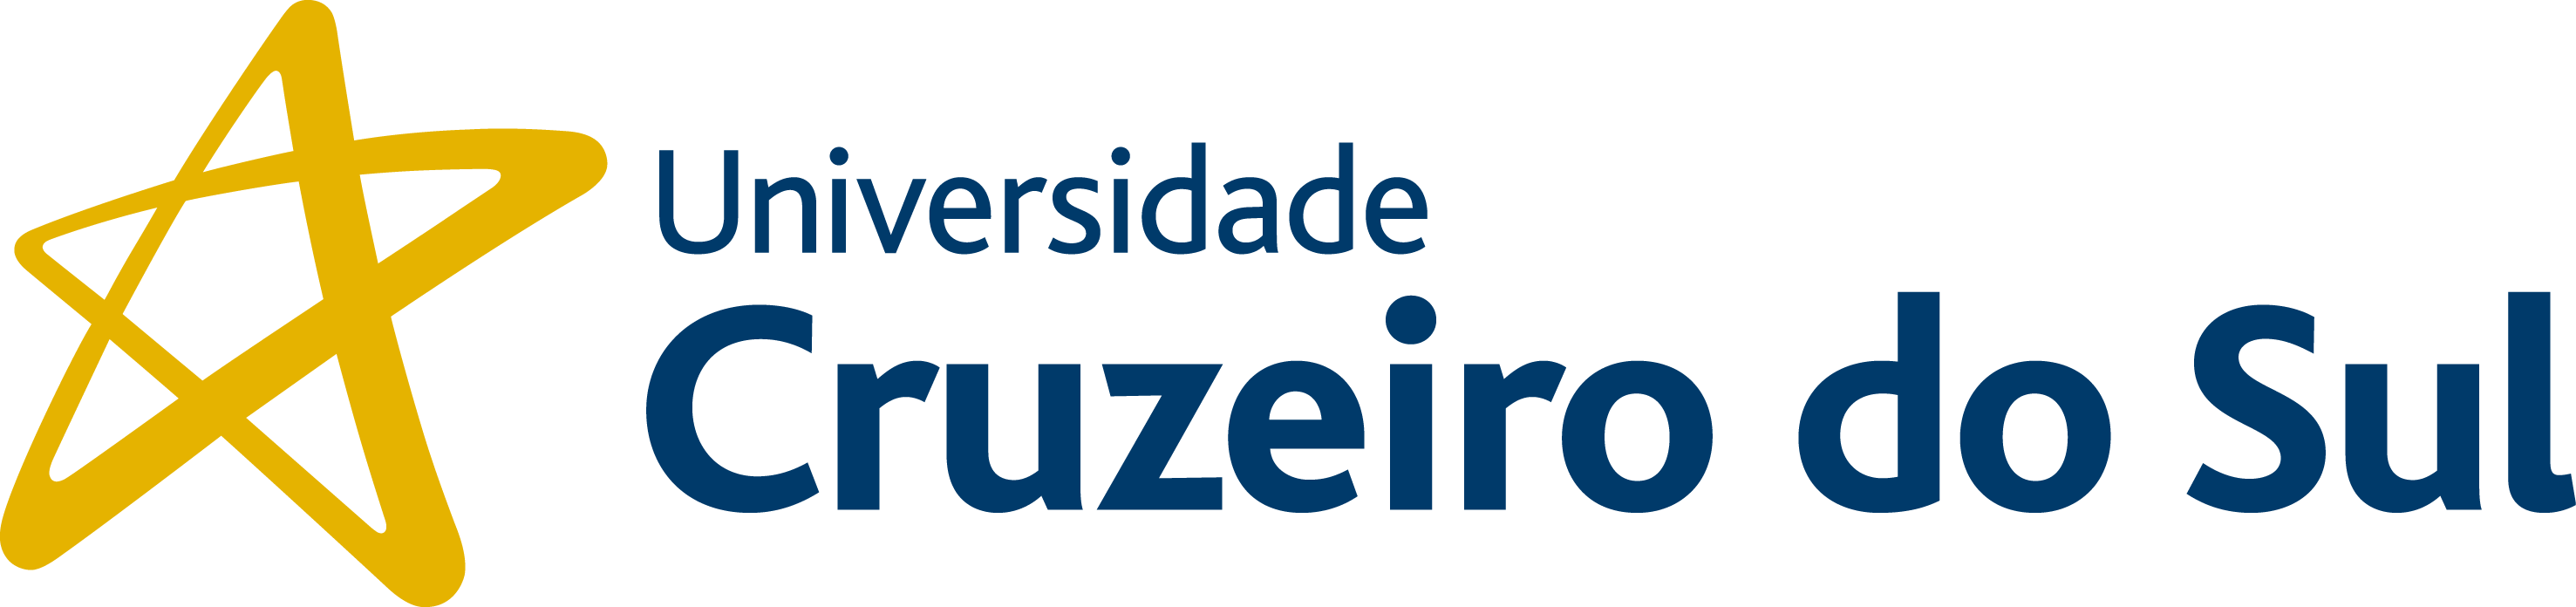 Universidade Cruzeiro do Sul - Campus Guarulhos